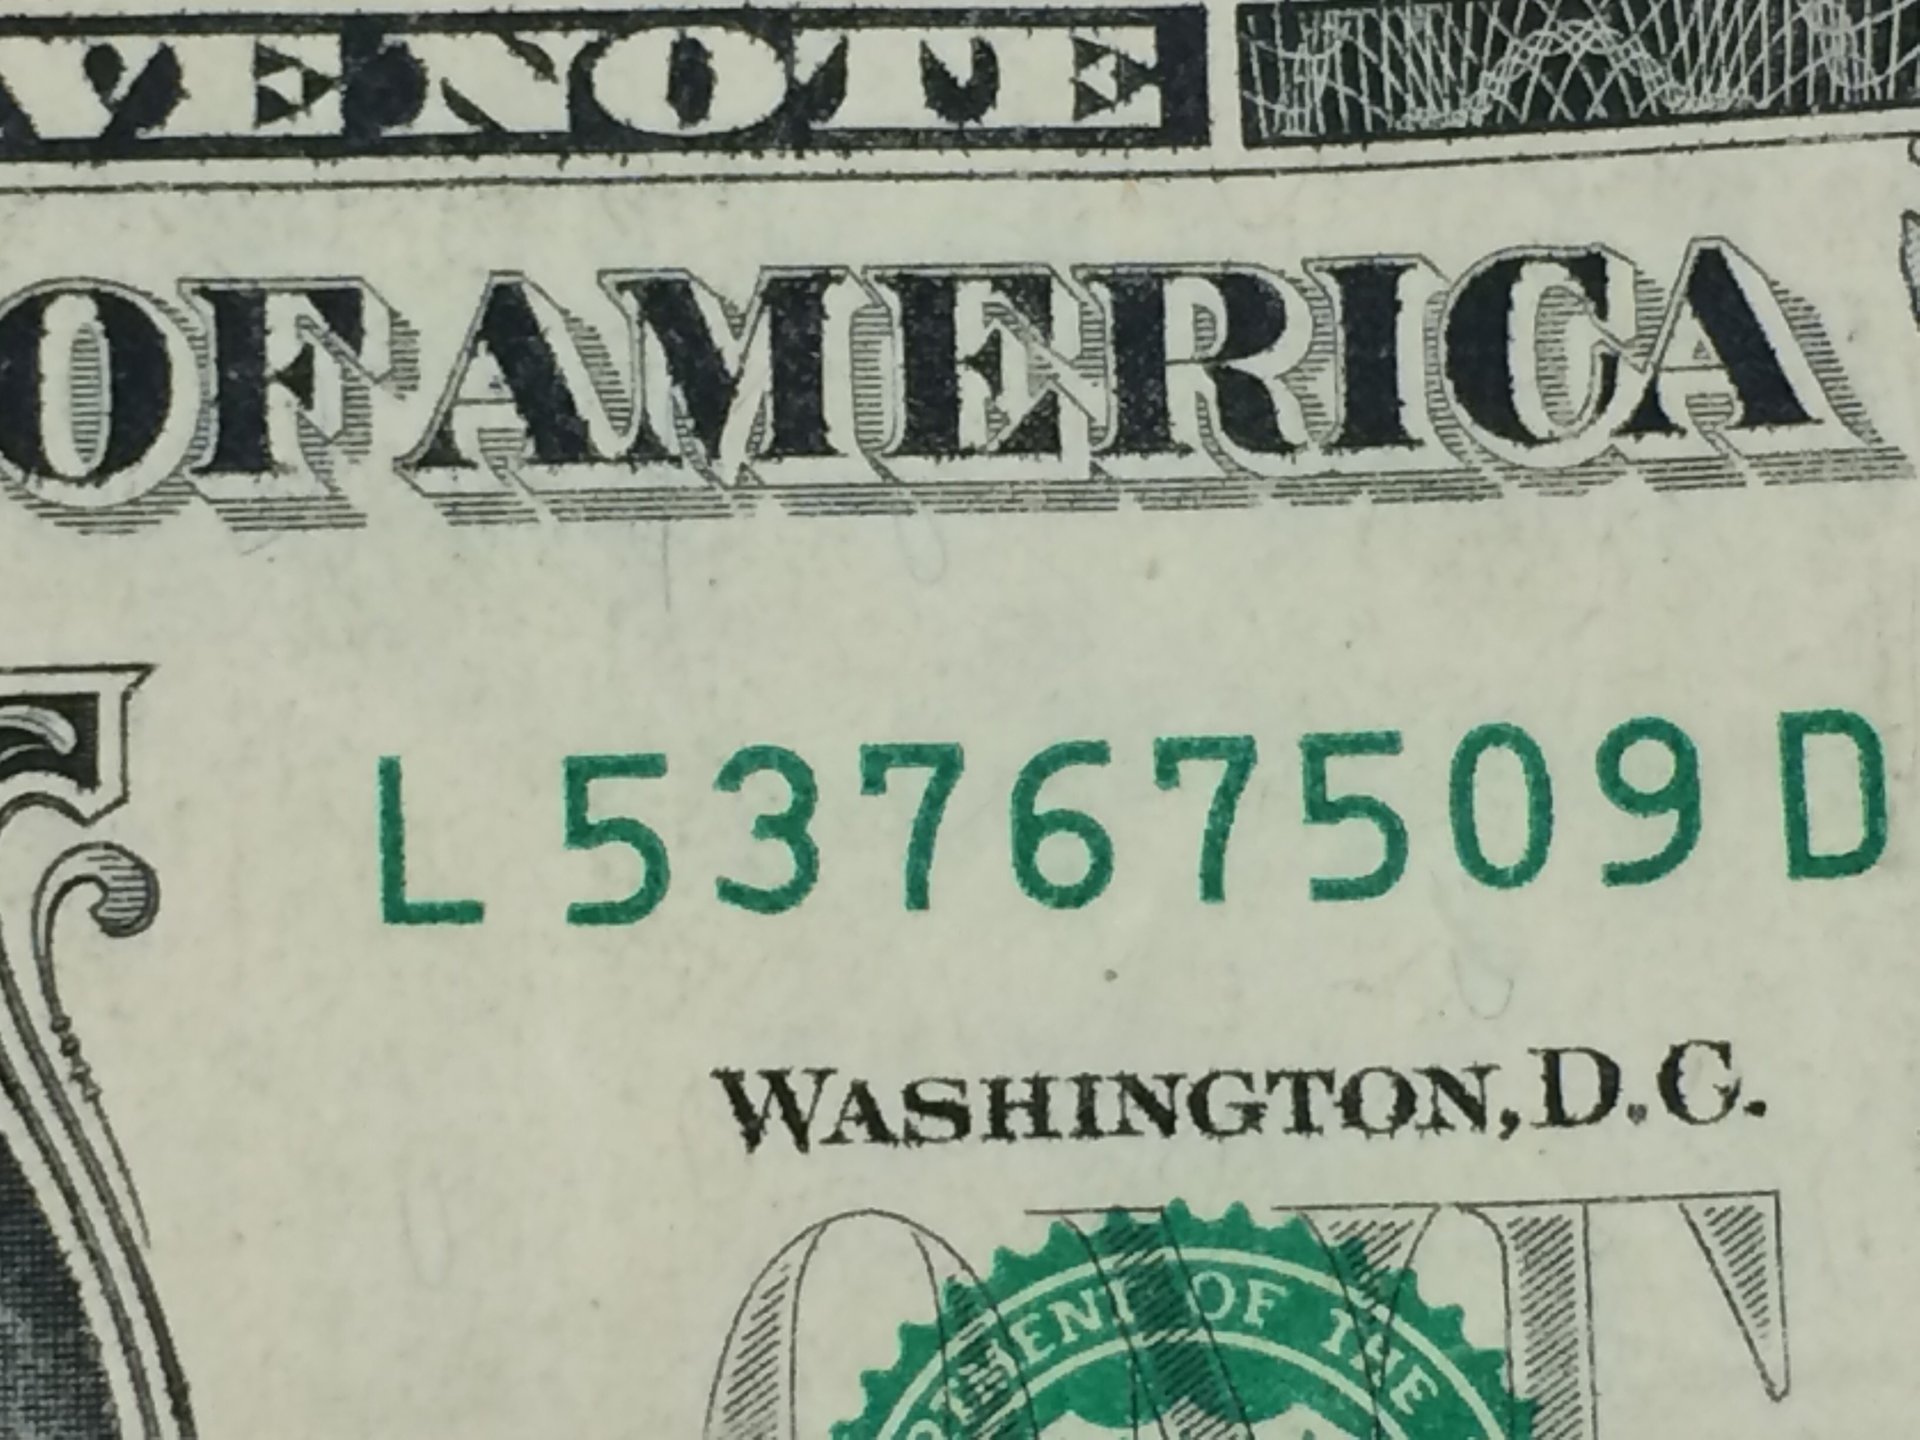 Dollar misaligned serial number | Coin Talk